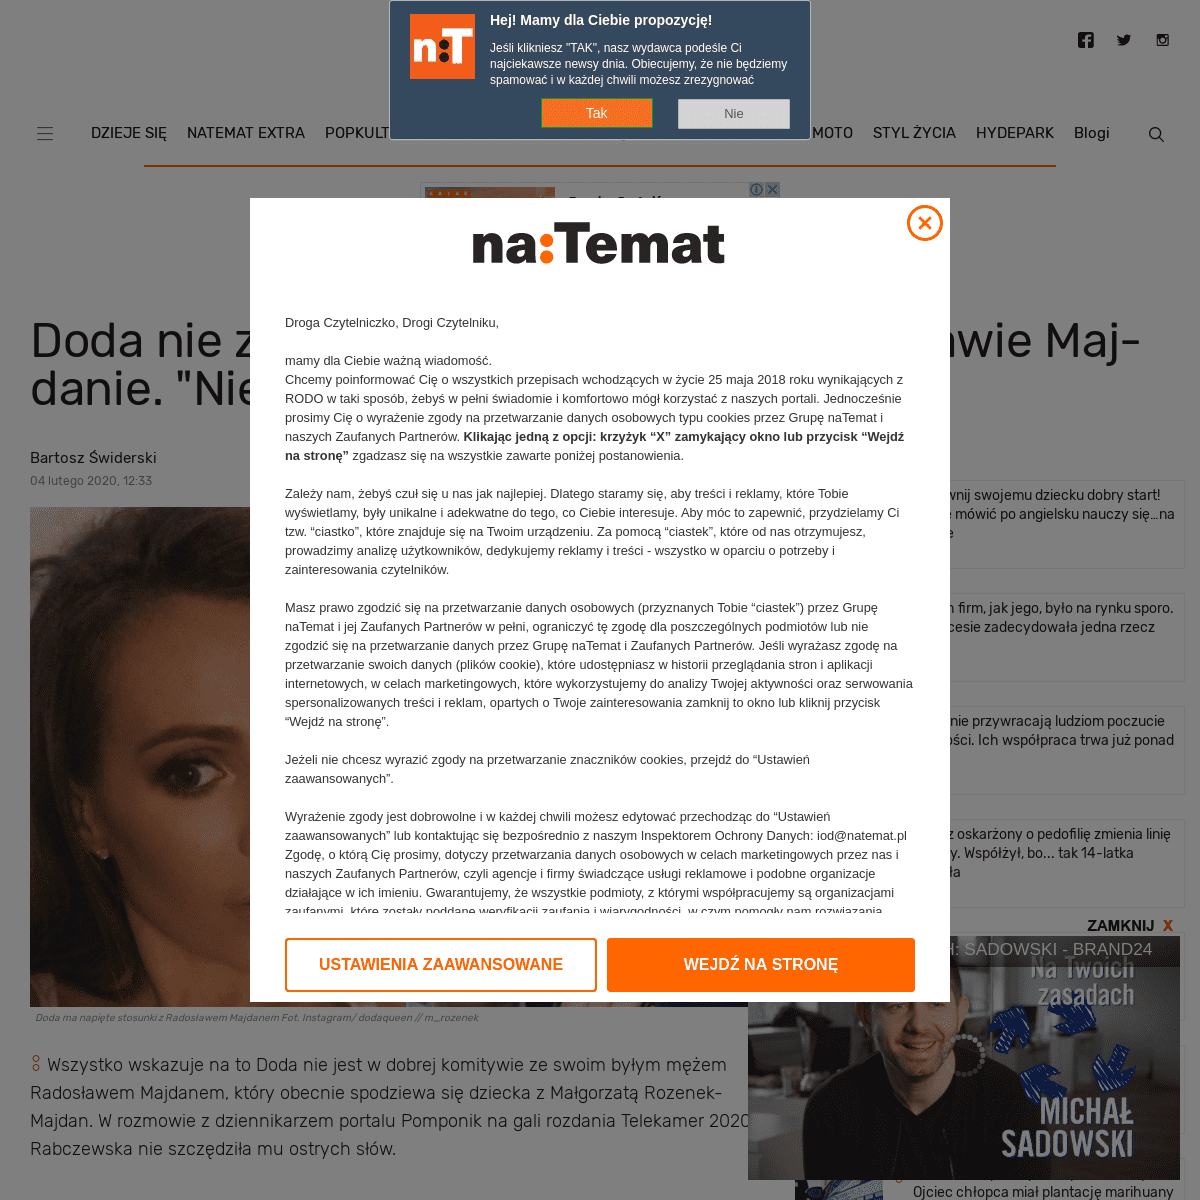 A complete backup of natemat.pl/298491